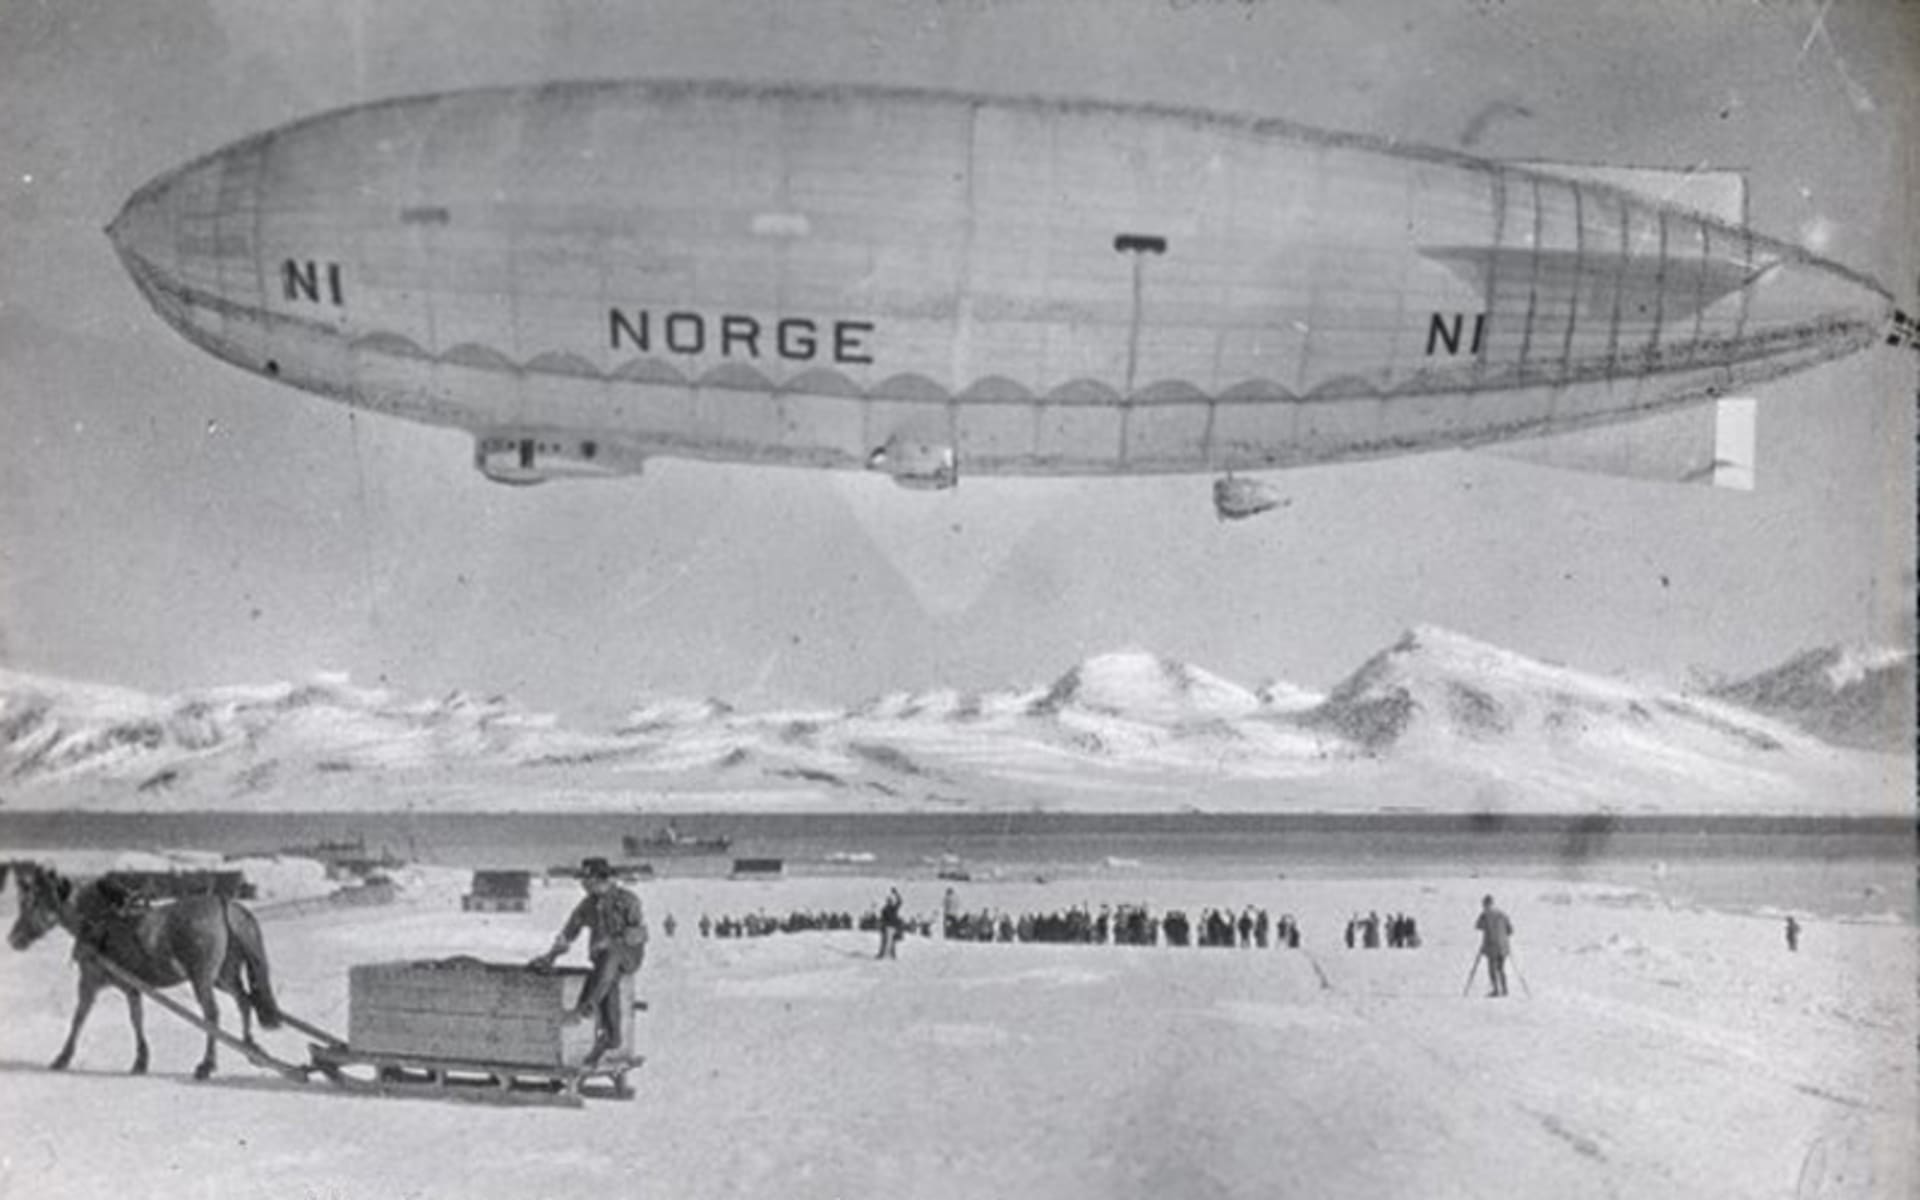 Vzducholoď Norge